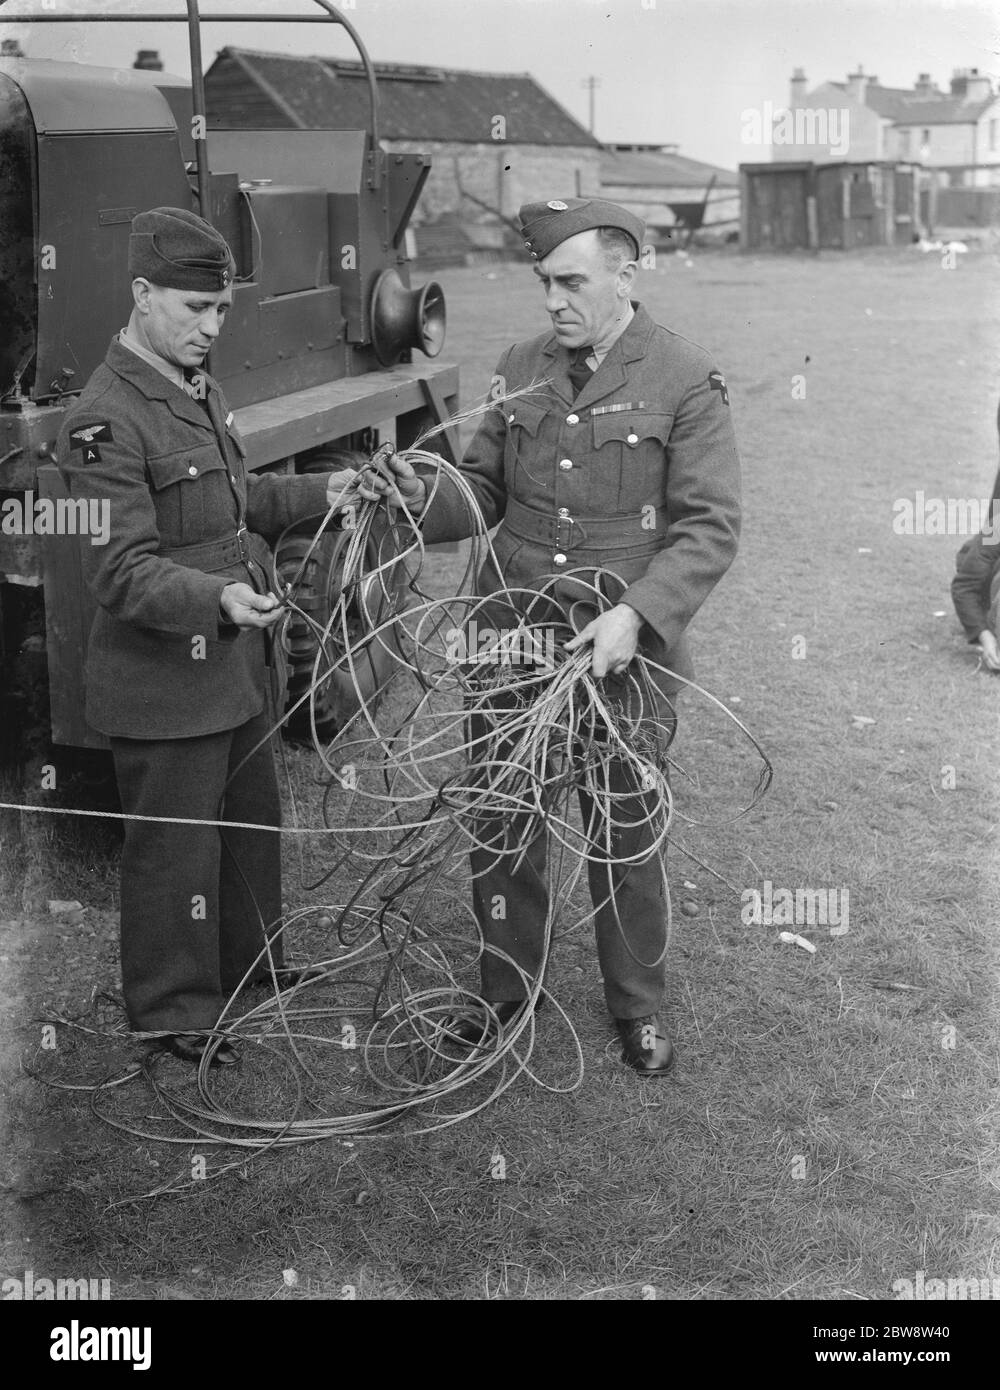 Deux hommes examinent les dommages causés par la tempête sous forme de câble cassé à une base de barrage à ballons . 1938 Banque D'Images